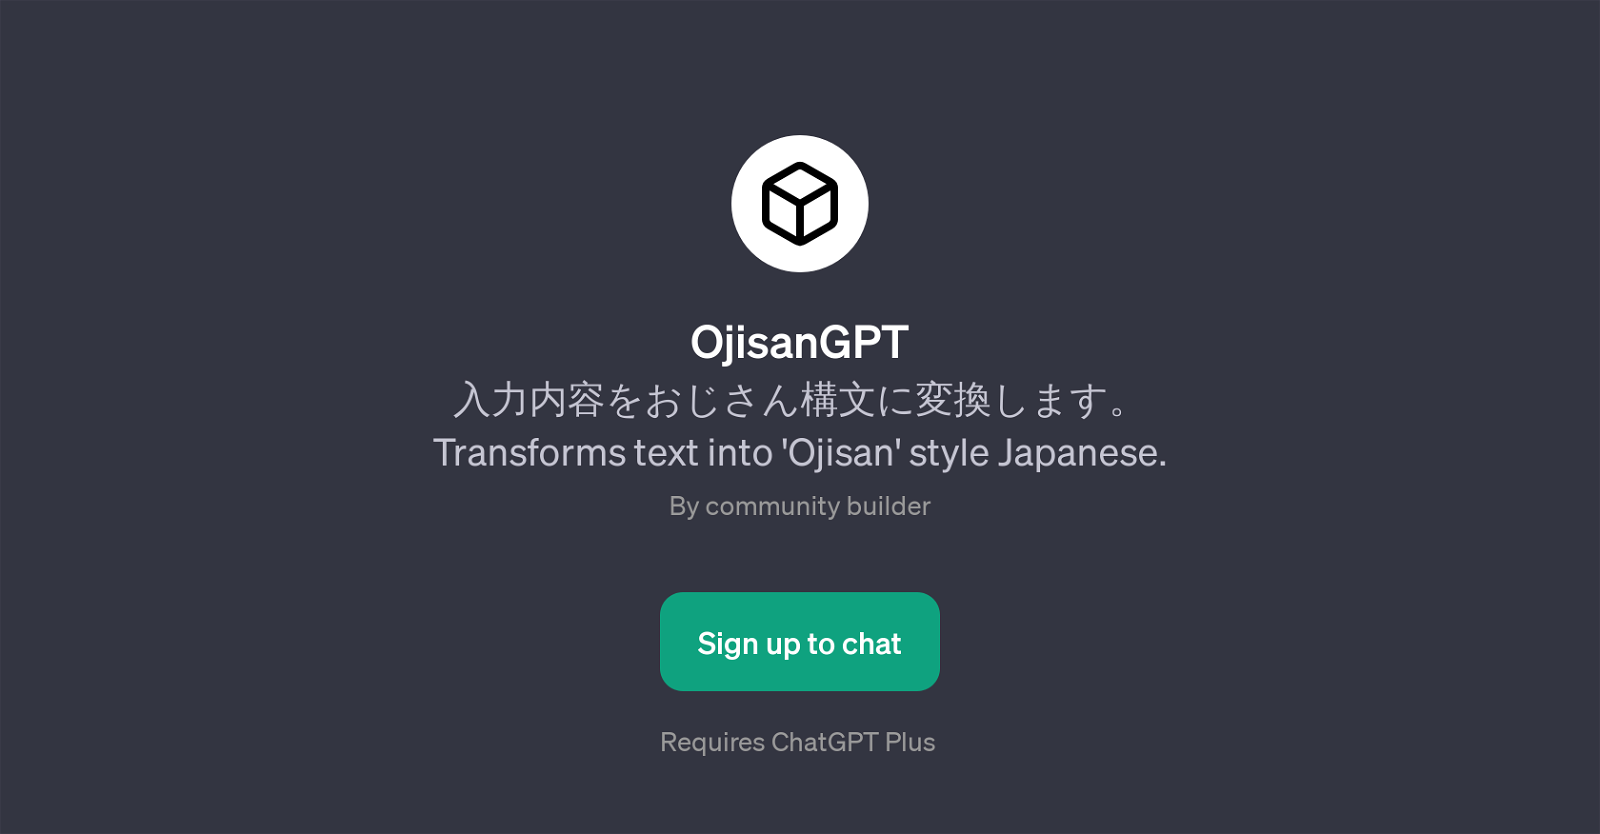 OjisanGPT website